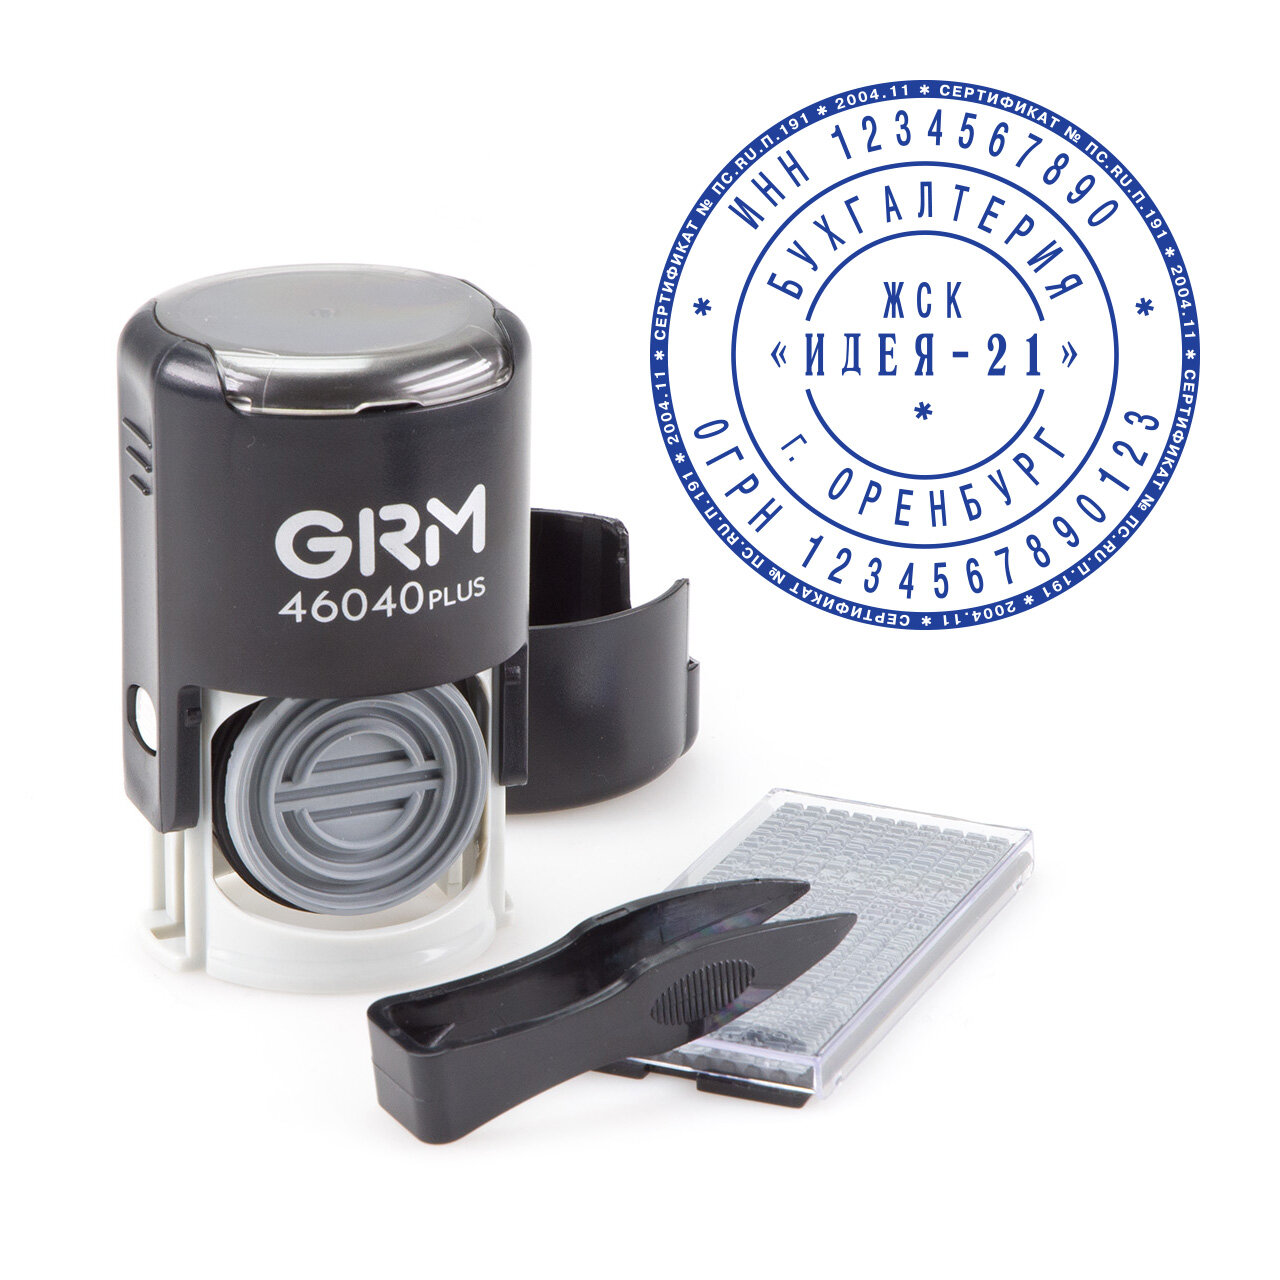 GRM 46040/1.5, самонаборная печать c микротекстом, 1,5 круга, 1 касса